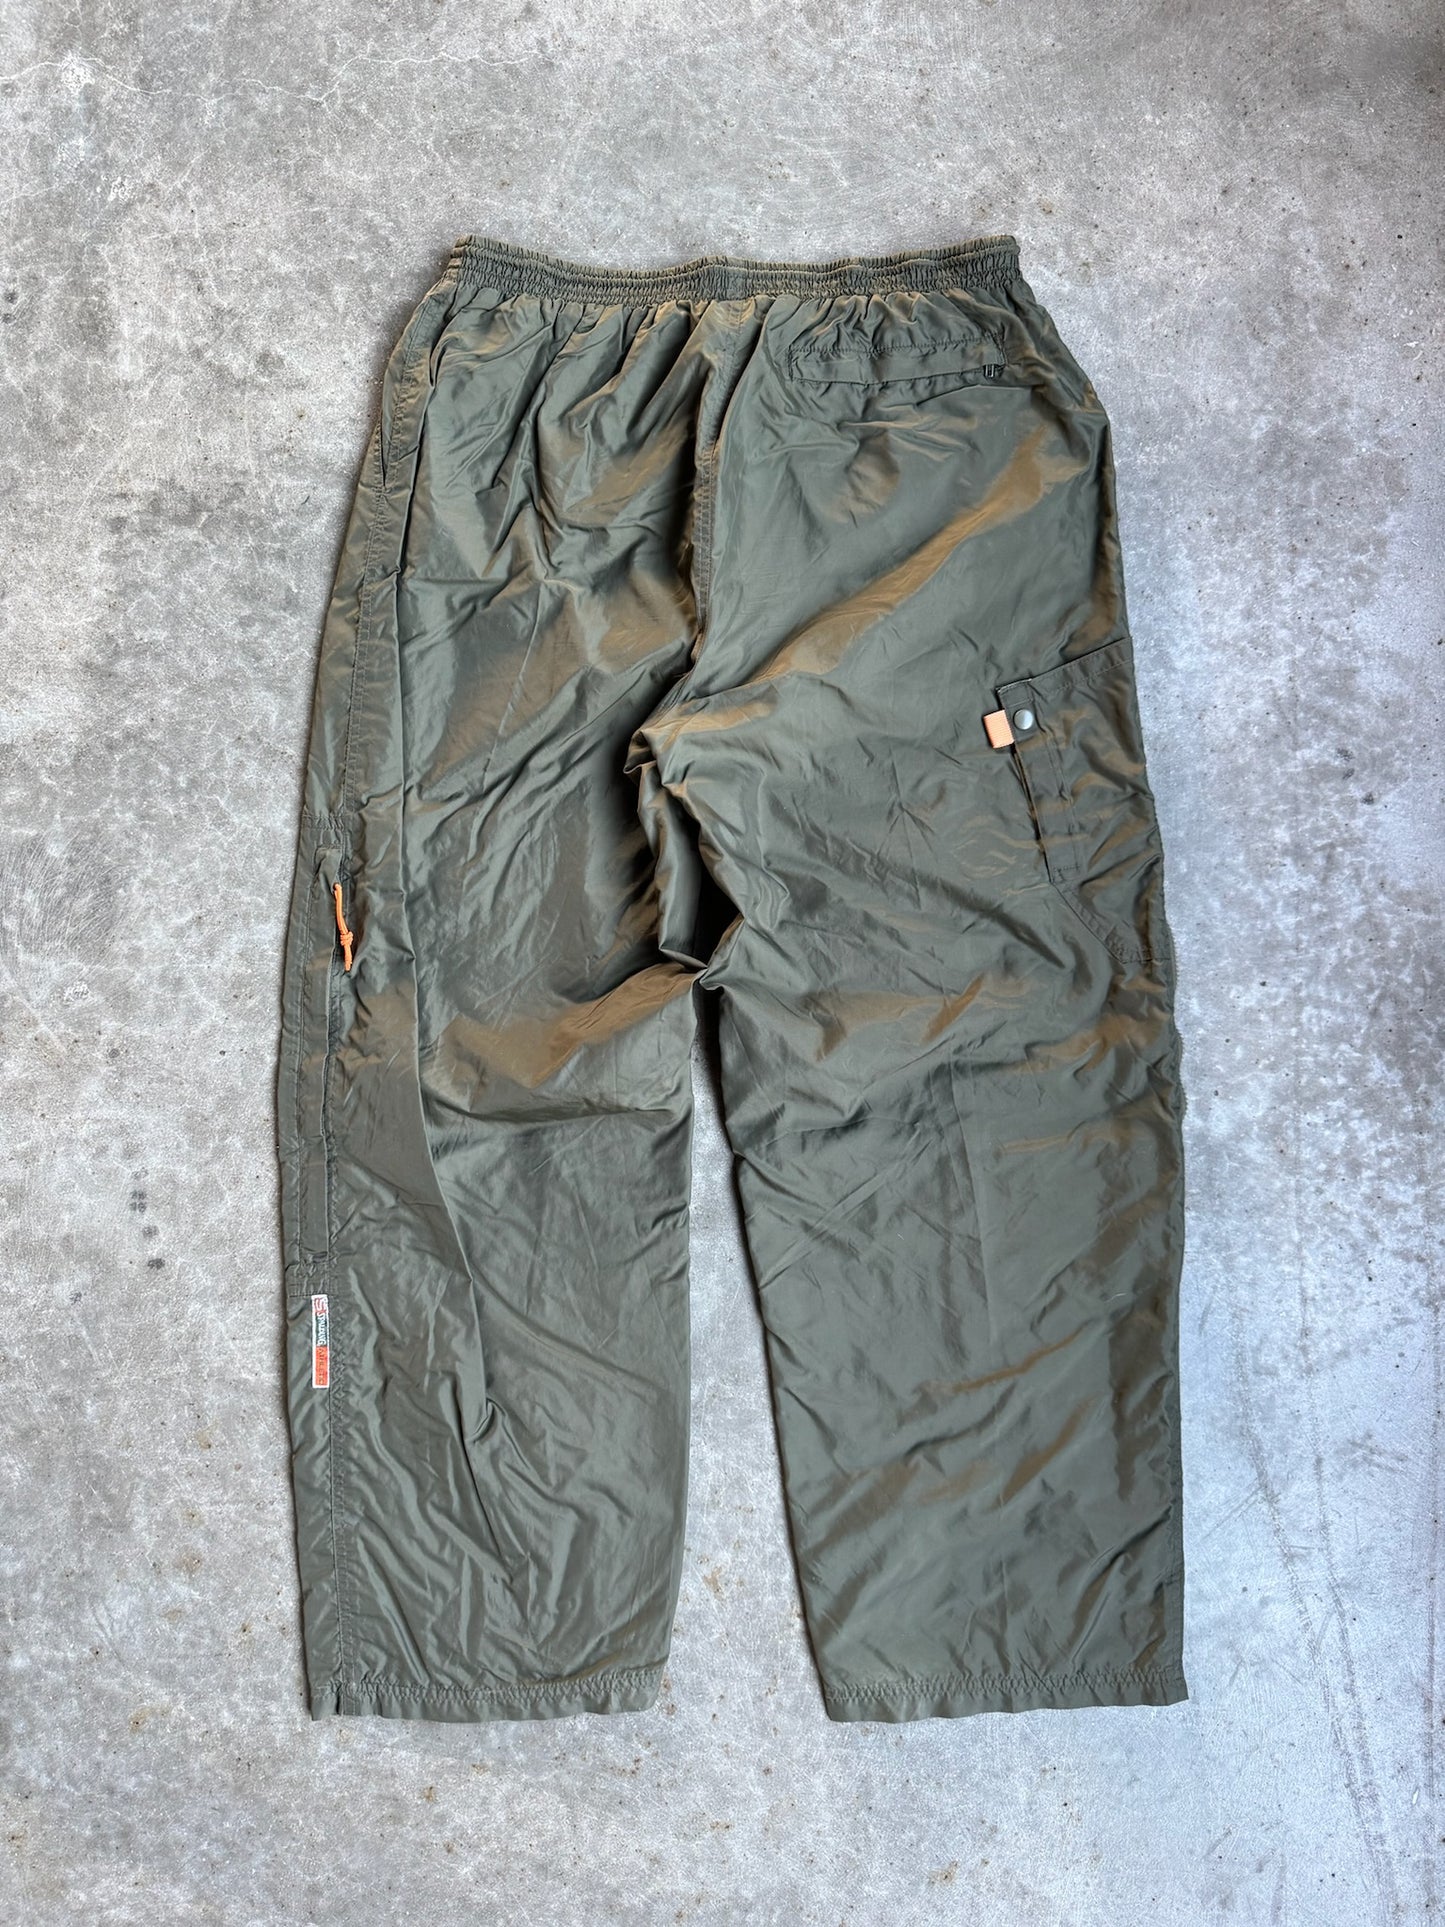 Vintage Spalding Parachute Pants - XL